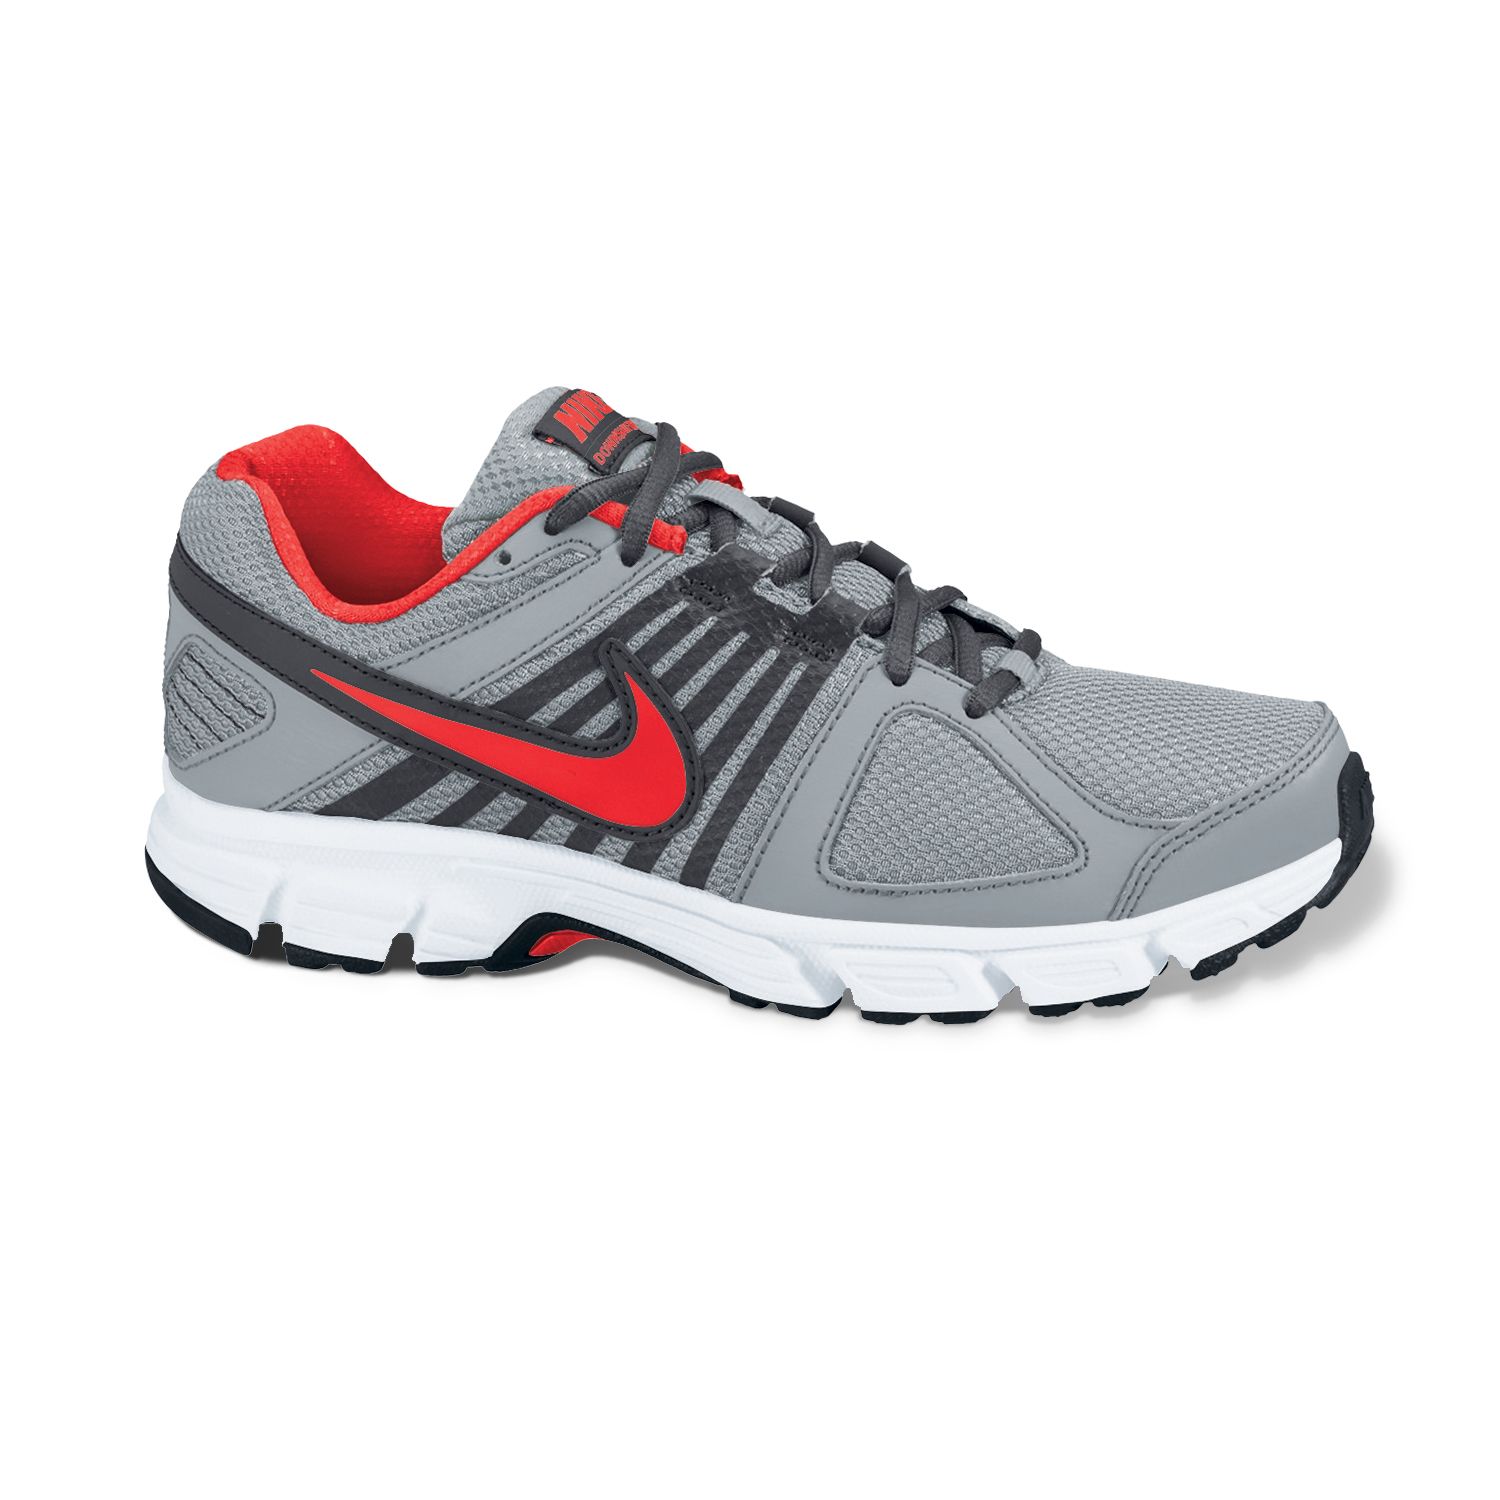 Nike Downshifter 5 Running Shoes - Men